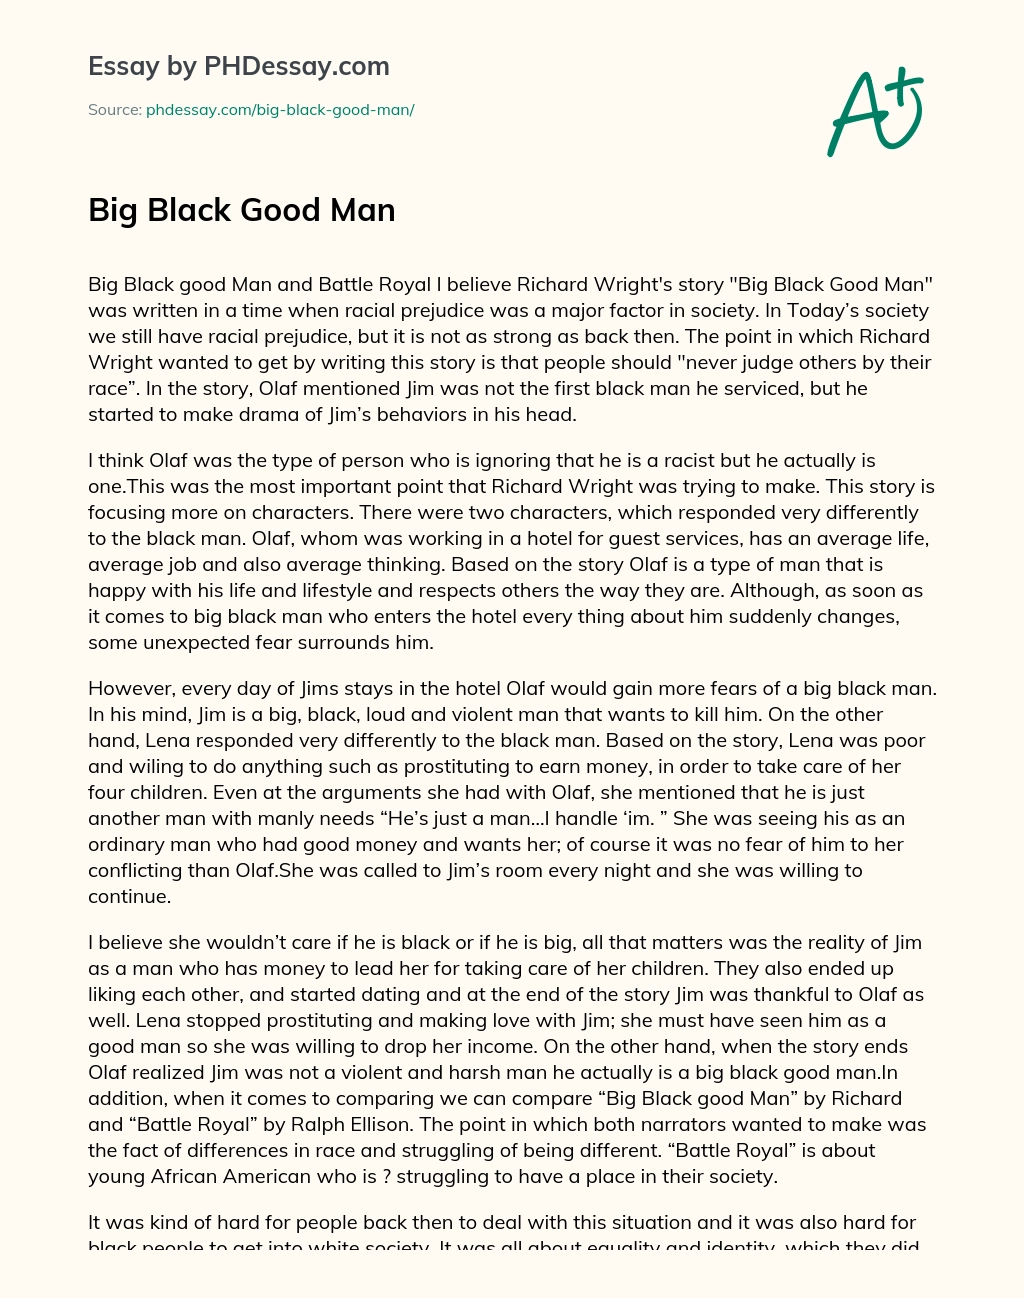 Big Black Good Man essay